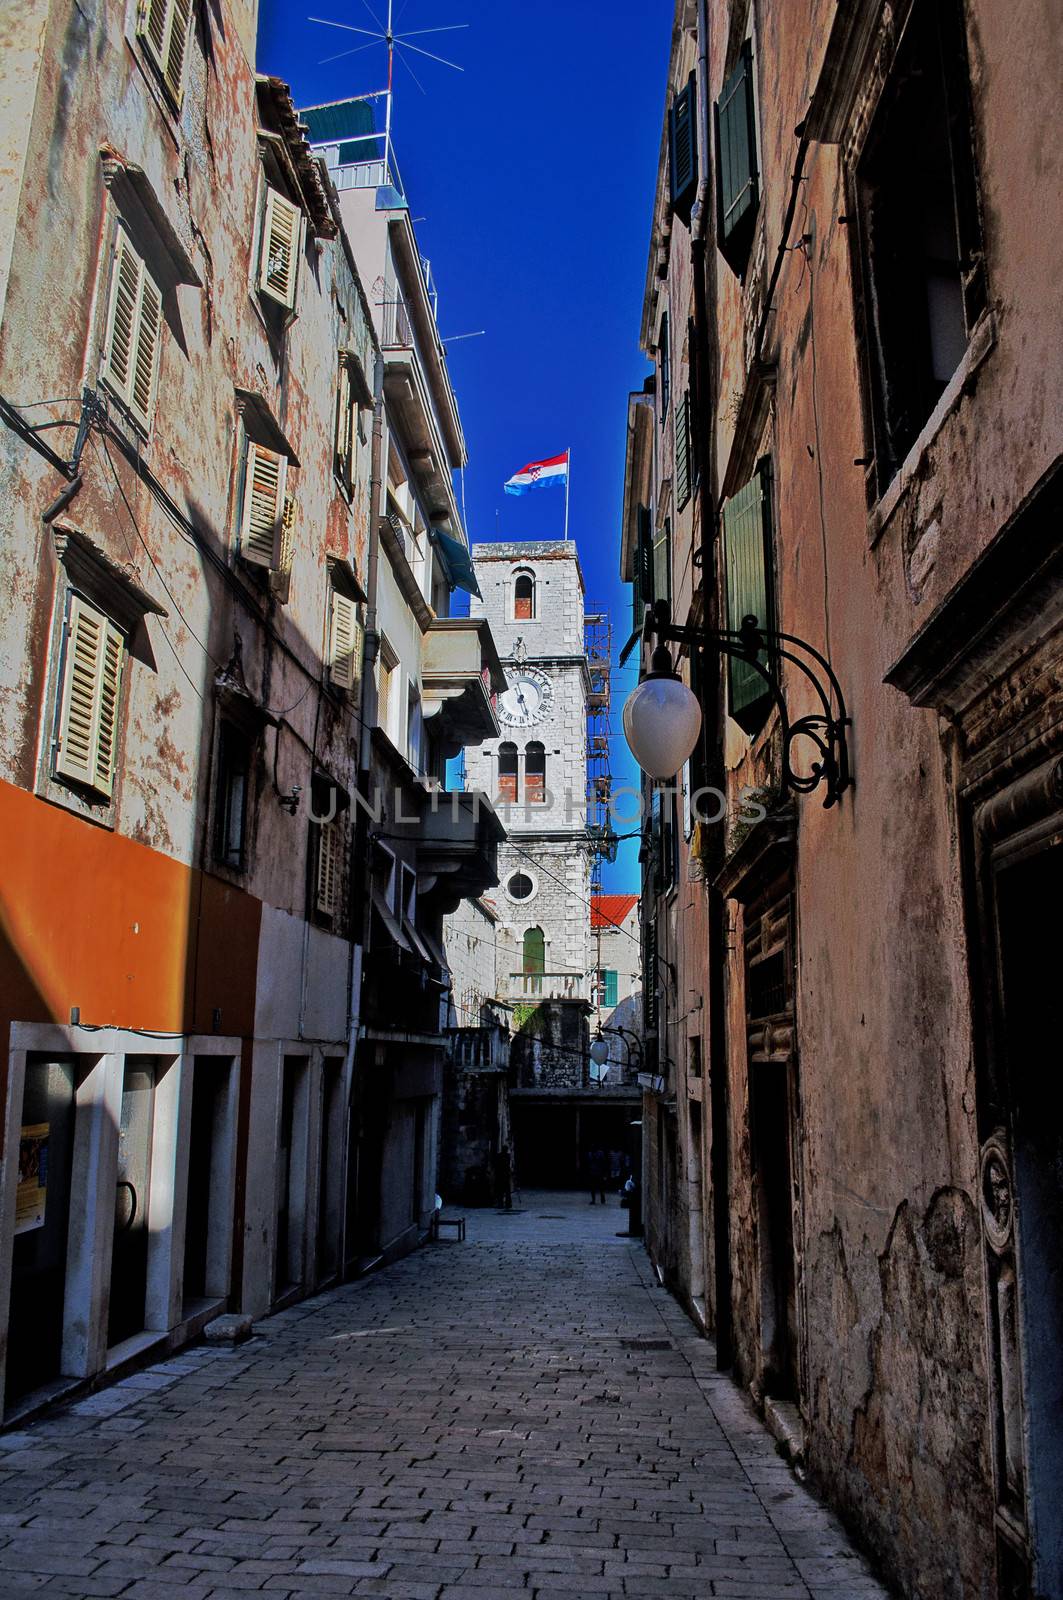 HDR view of an old stone street in Sibenik, Croatia